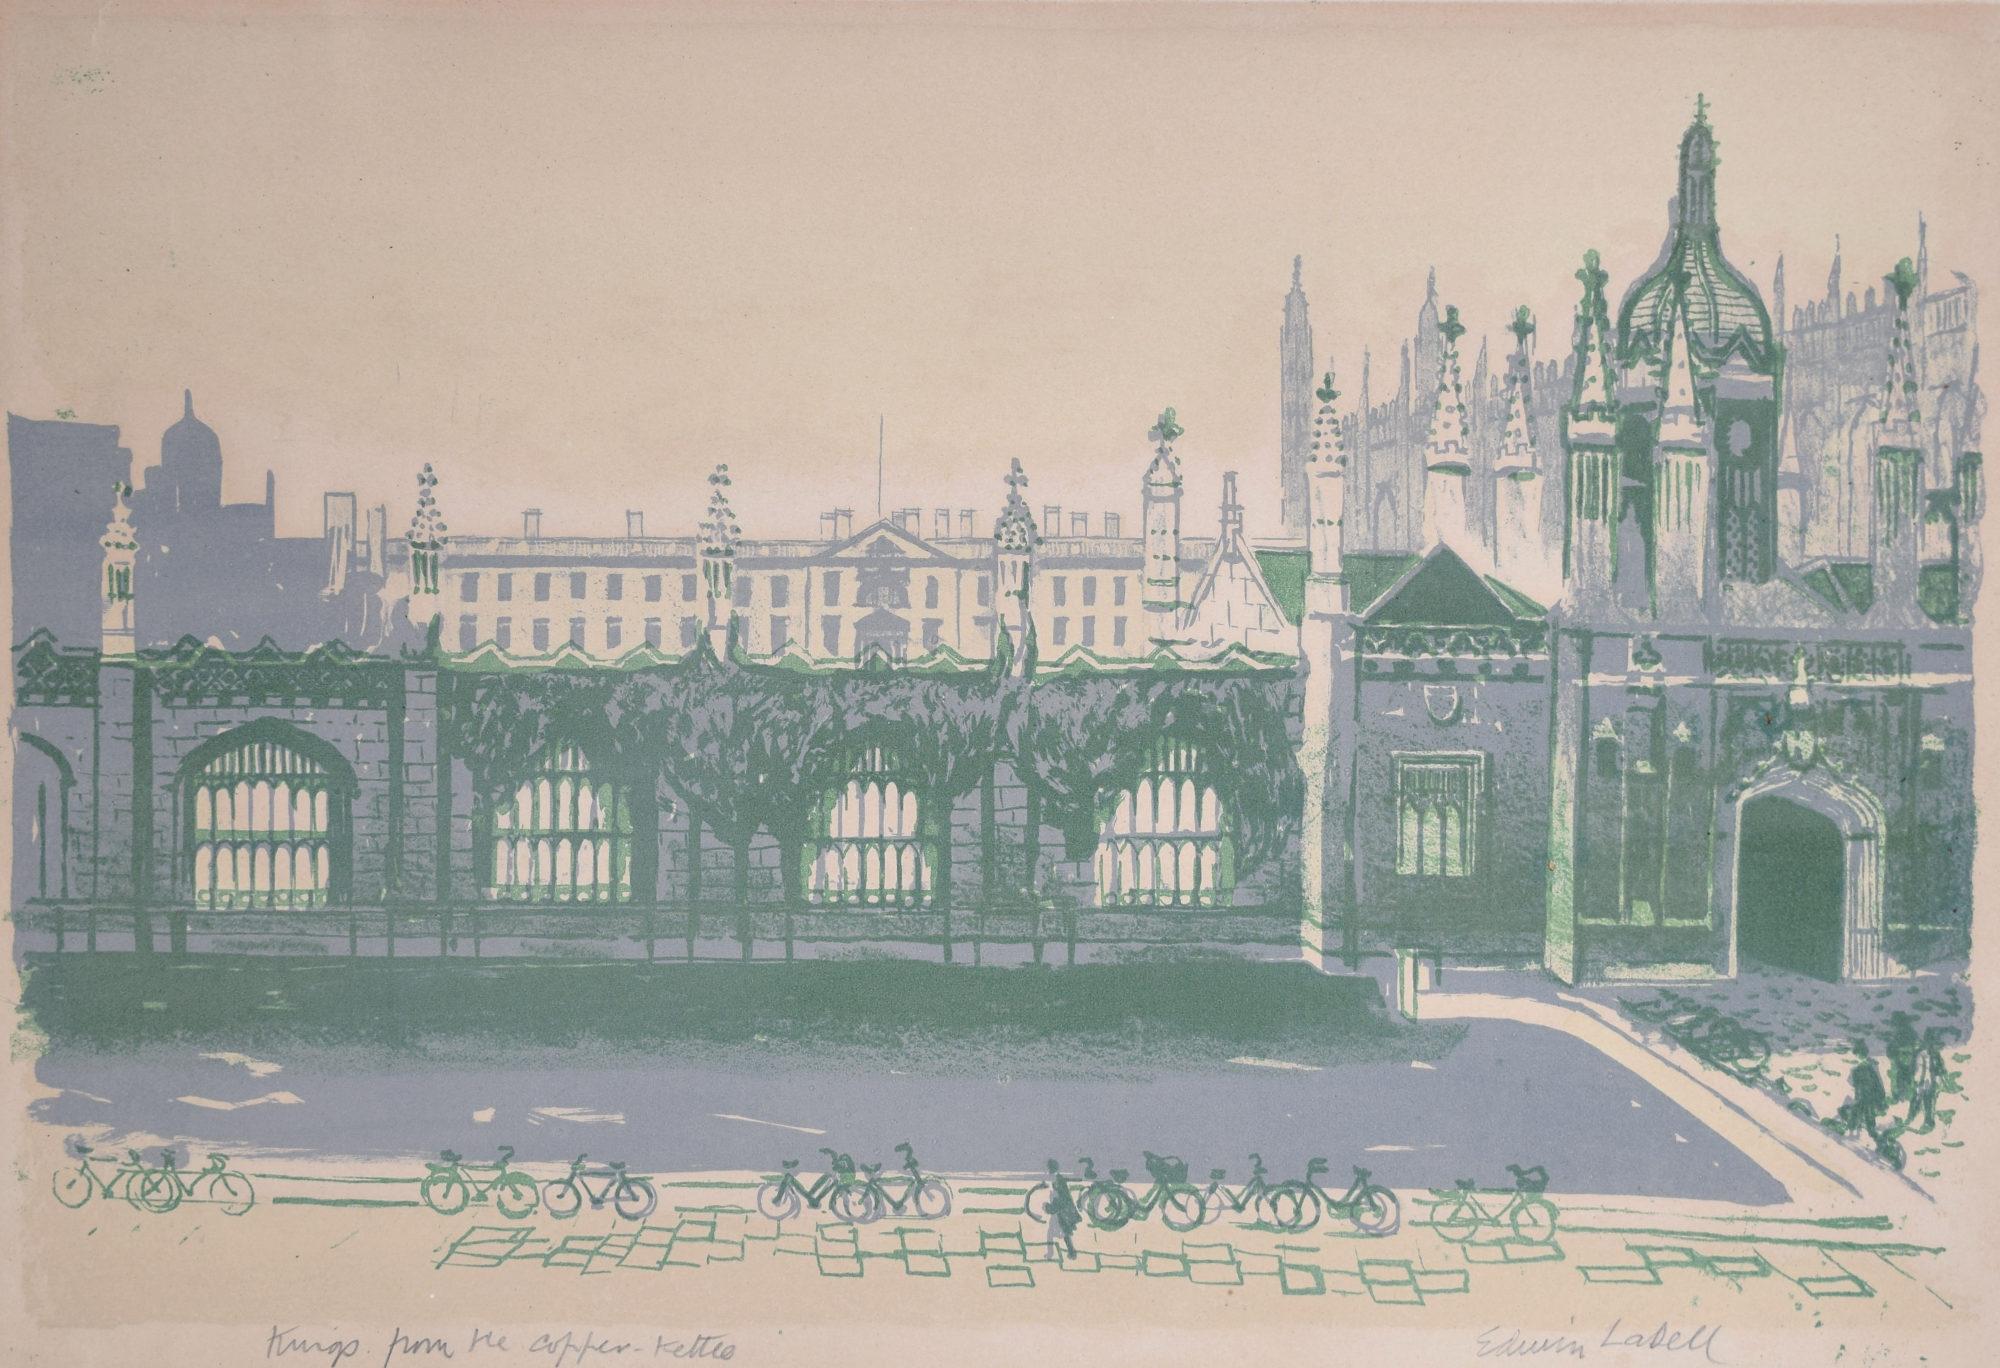 Signierte Lithographie von Kupferkessel von Edwin La Dell für das Cambridge King's College